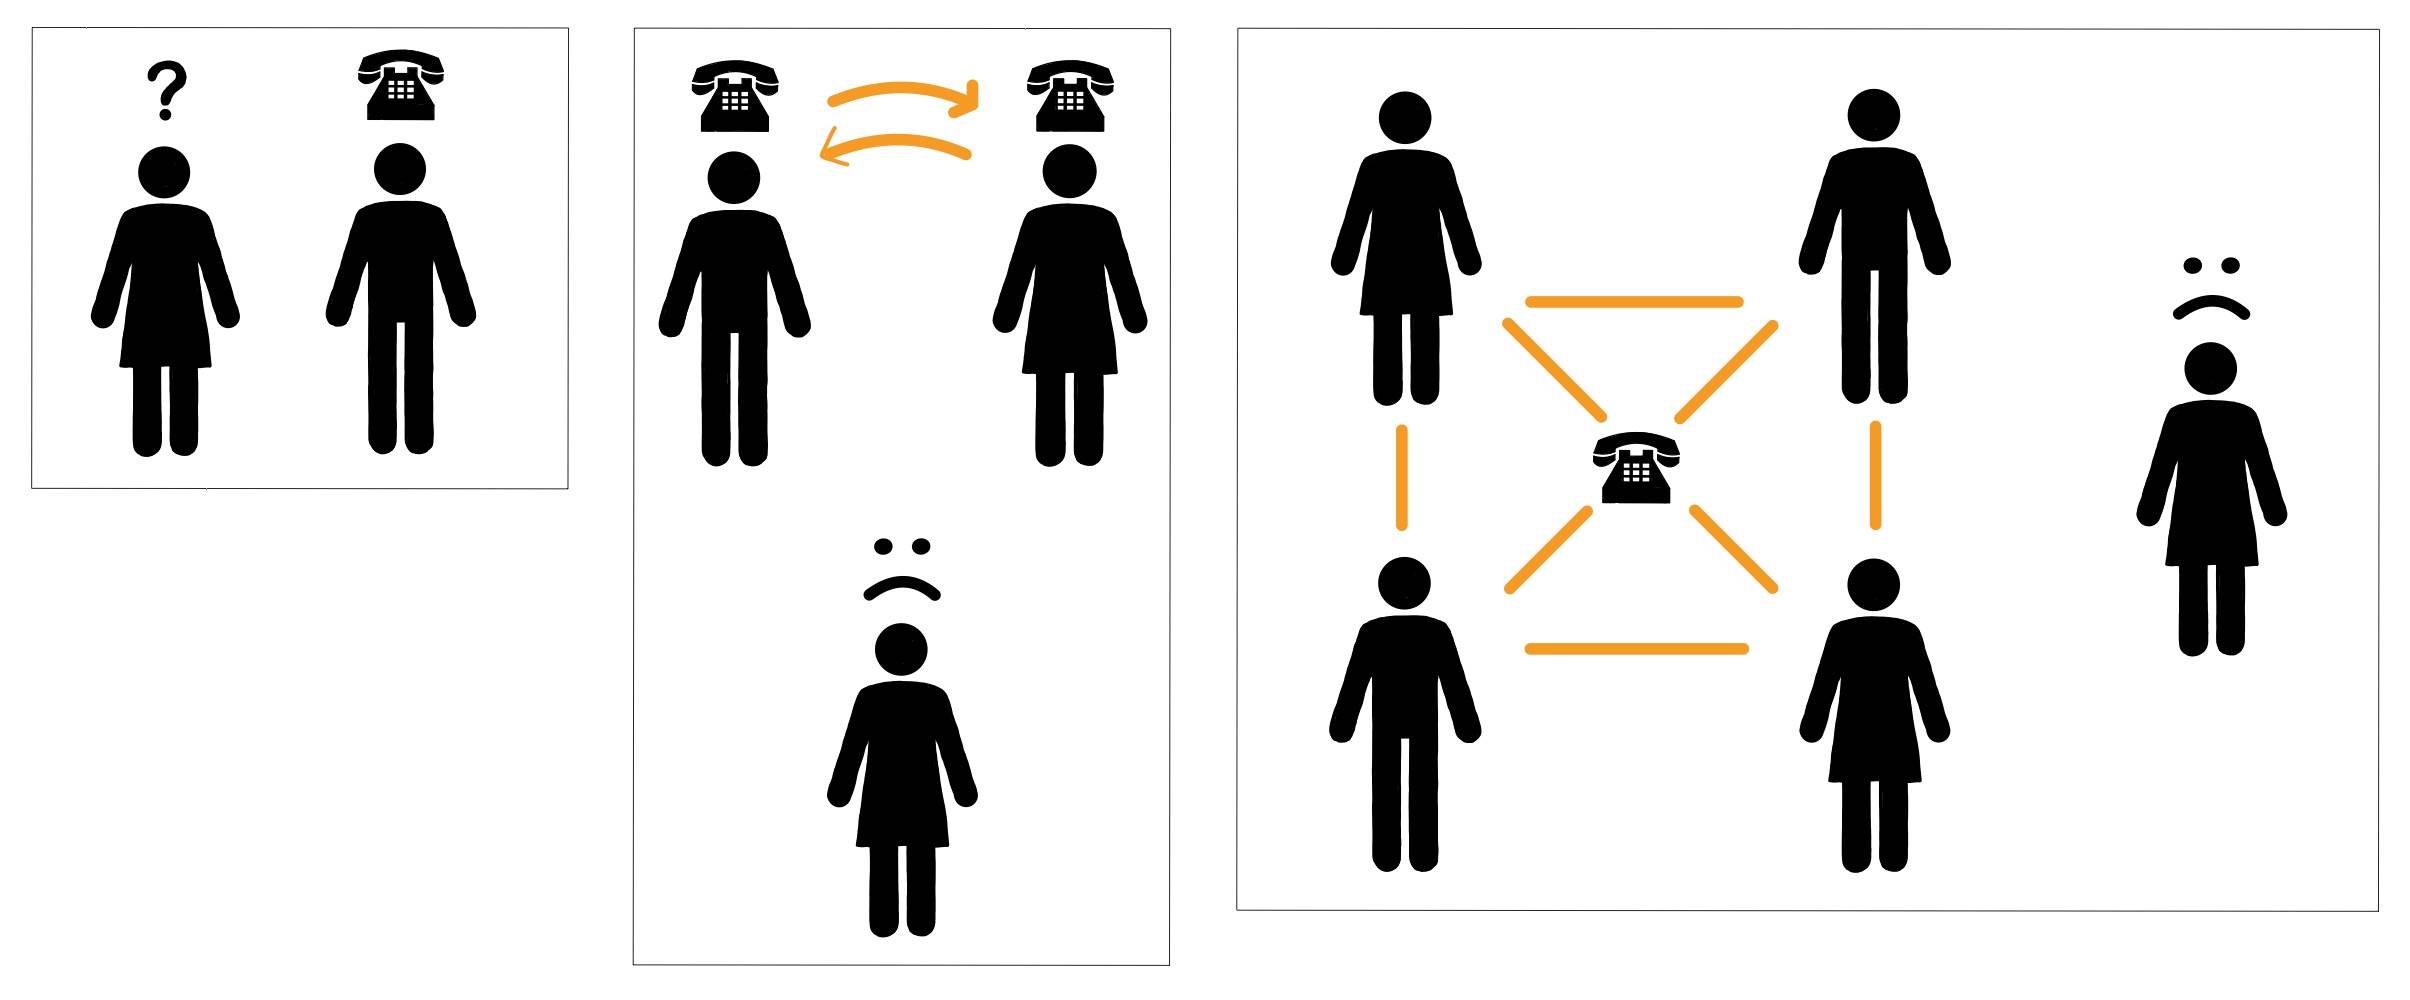 Piktogramm zur Darstellung von Netzwerken